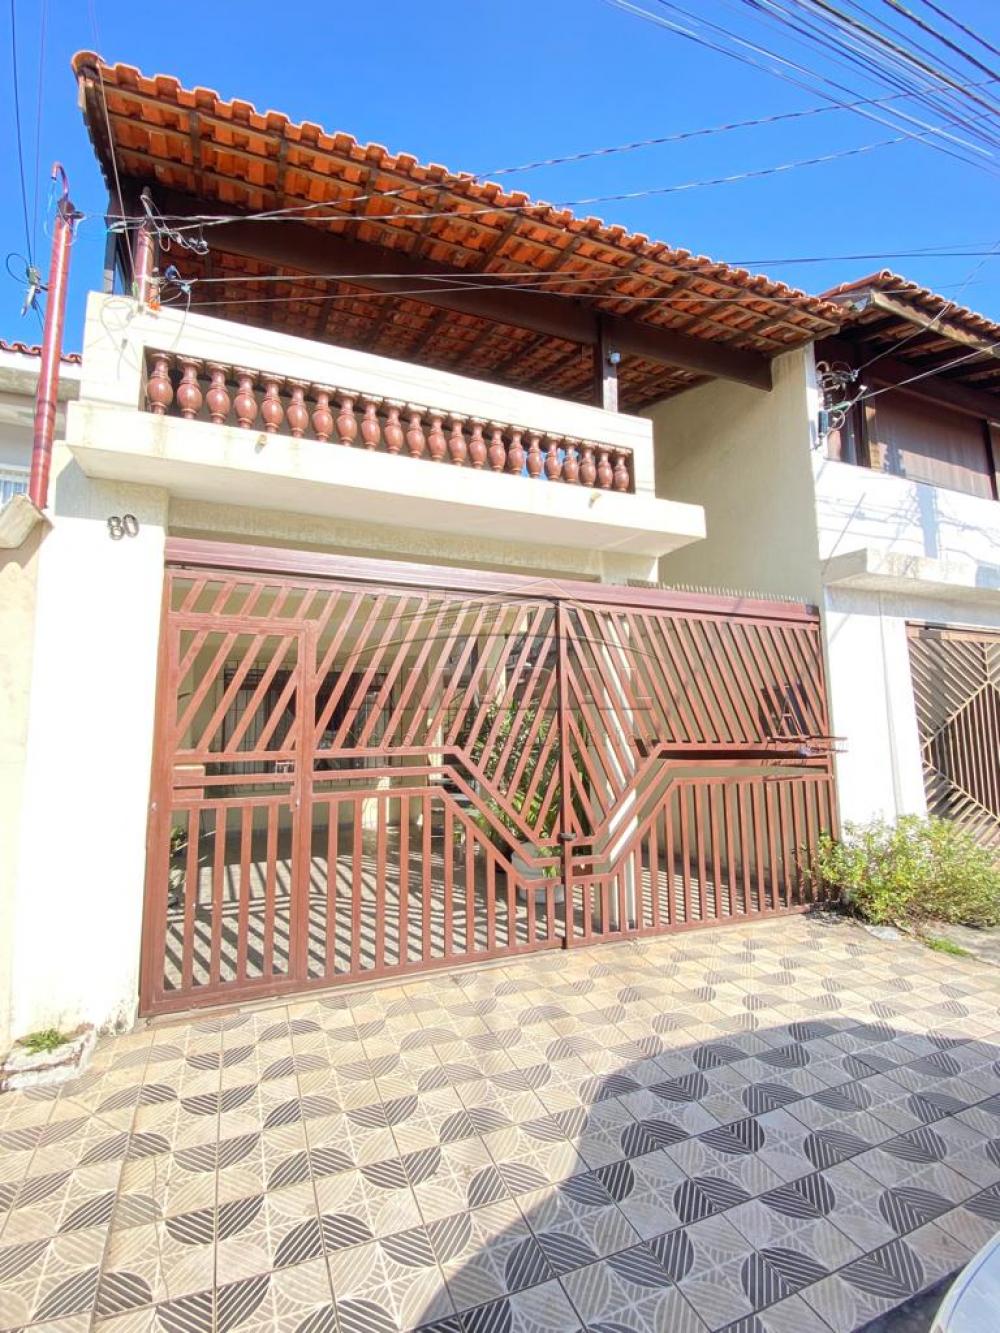 Alugar Casas / Sobrado em Suzano R$ 1.800,00 - Foto 1